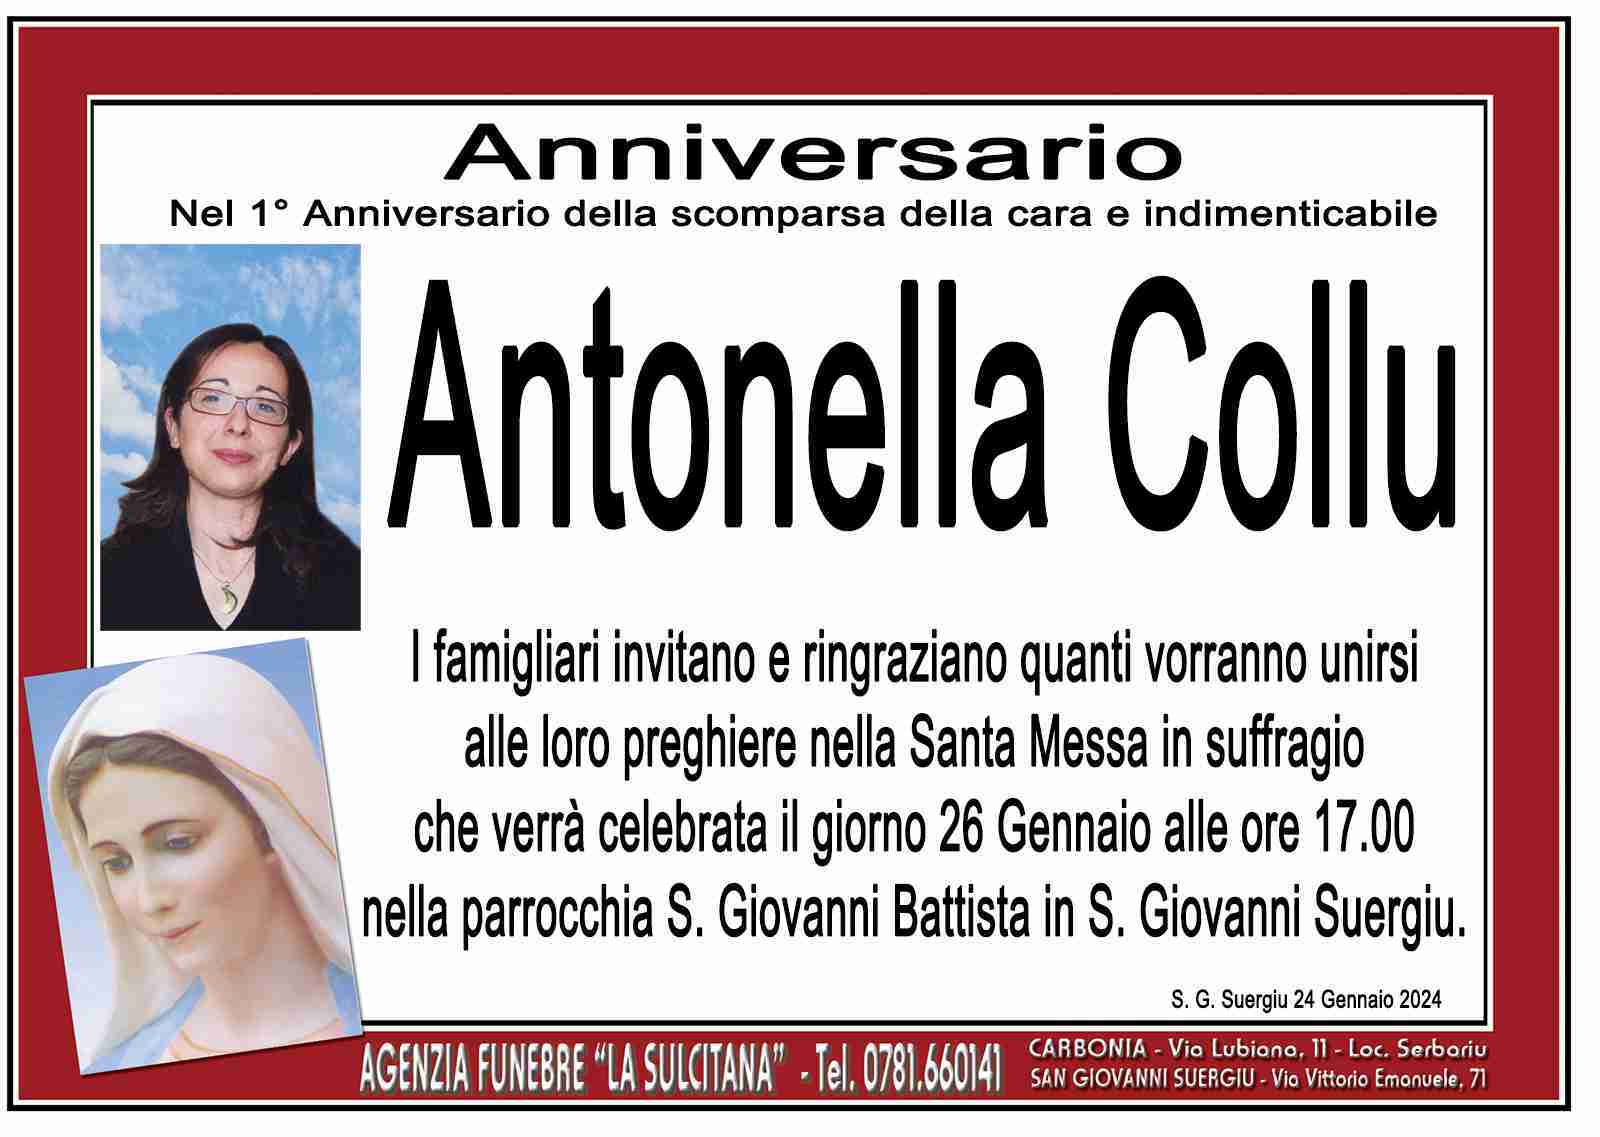 Antonella Collu